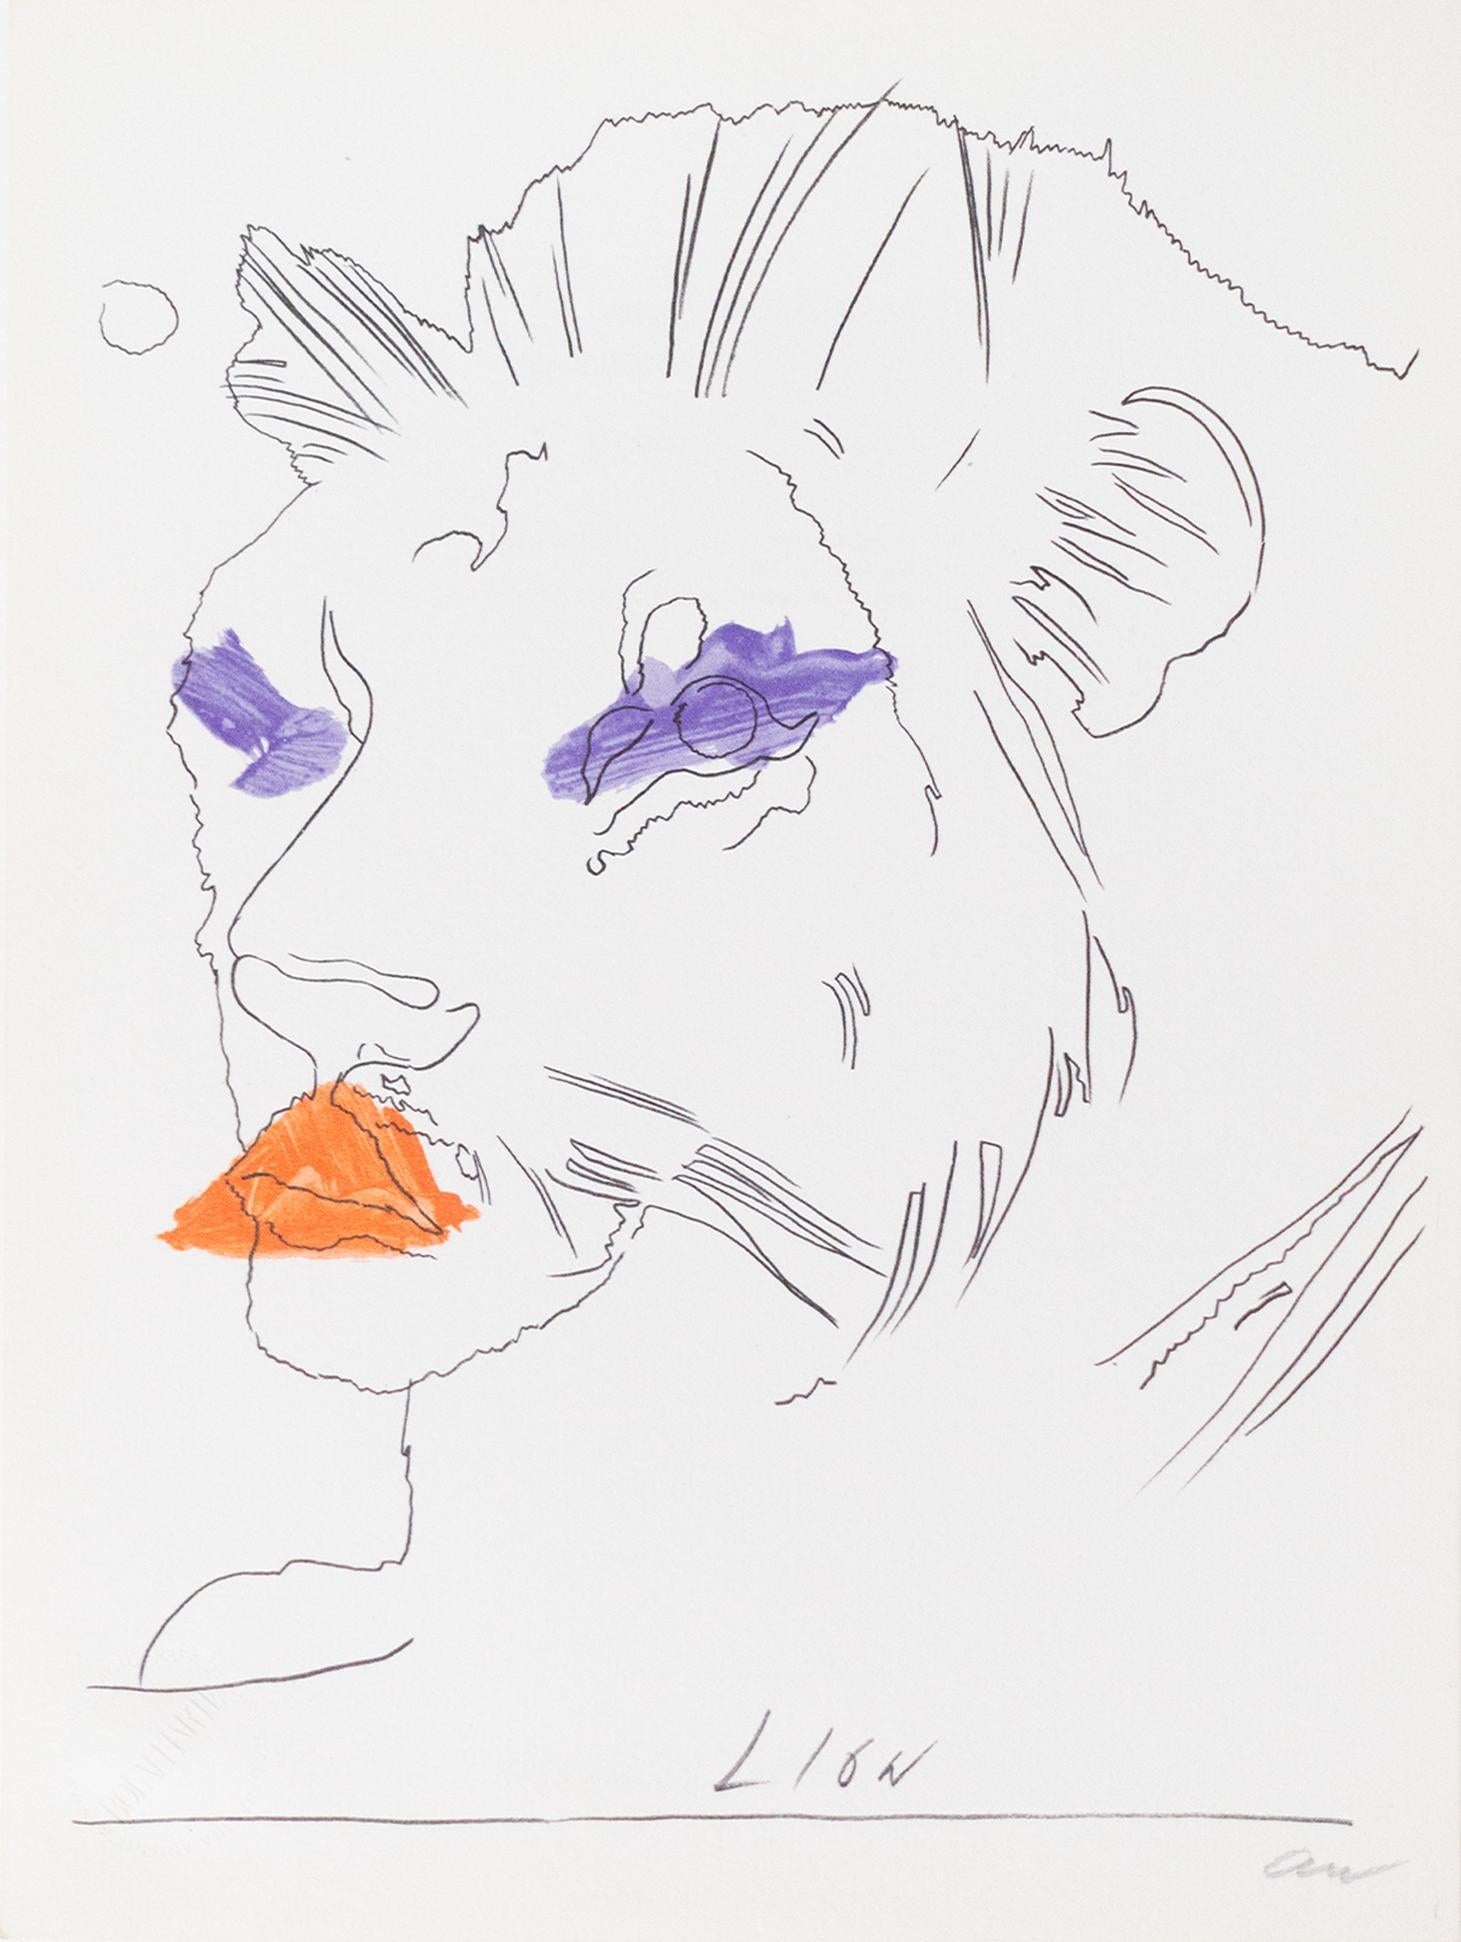 Photolithographie originale sur papier faisant partie de l'édition originale de l'œuvre d'Andy Warhol "THE LION" spécialement exécutée pour la série "LO ZODIACO/The Zodiac" pour "BOLAFFI ARTE".
L'édition a été exécutée en 5 000 exemplaires numérotés